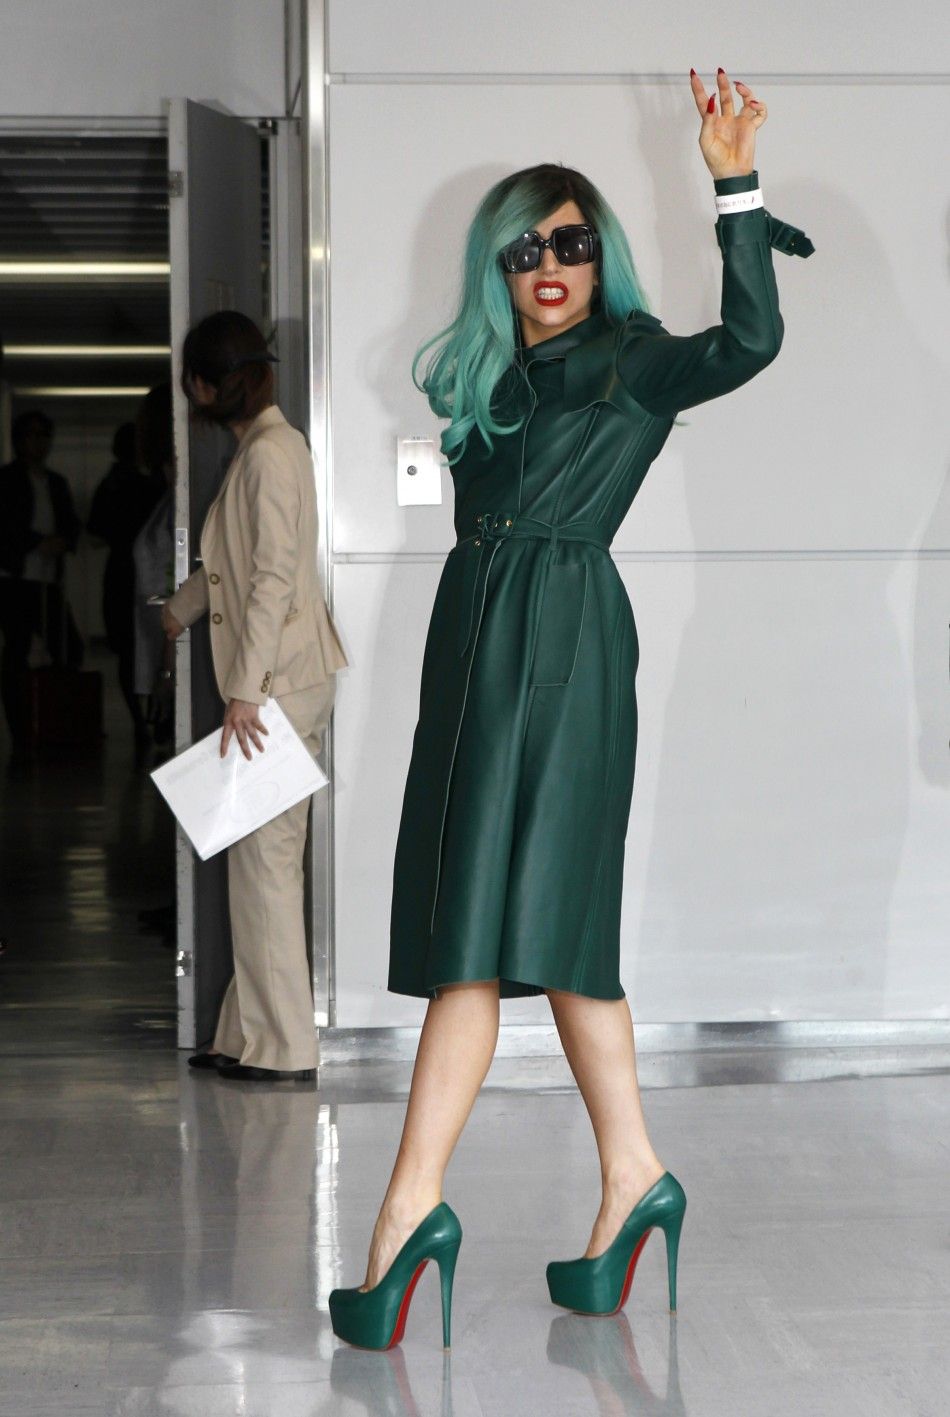 Lady Gaga arrives in Japan